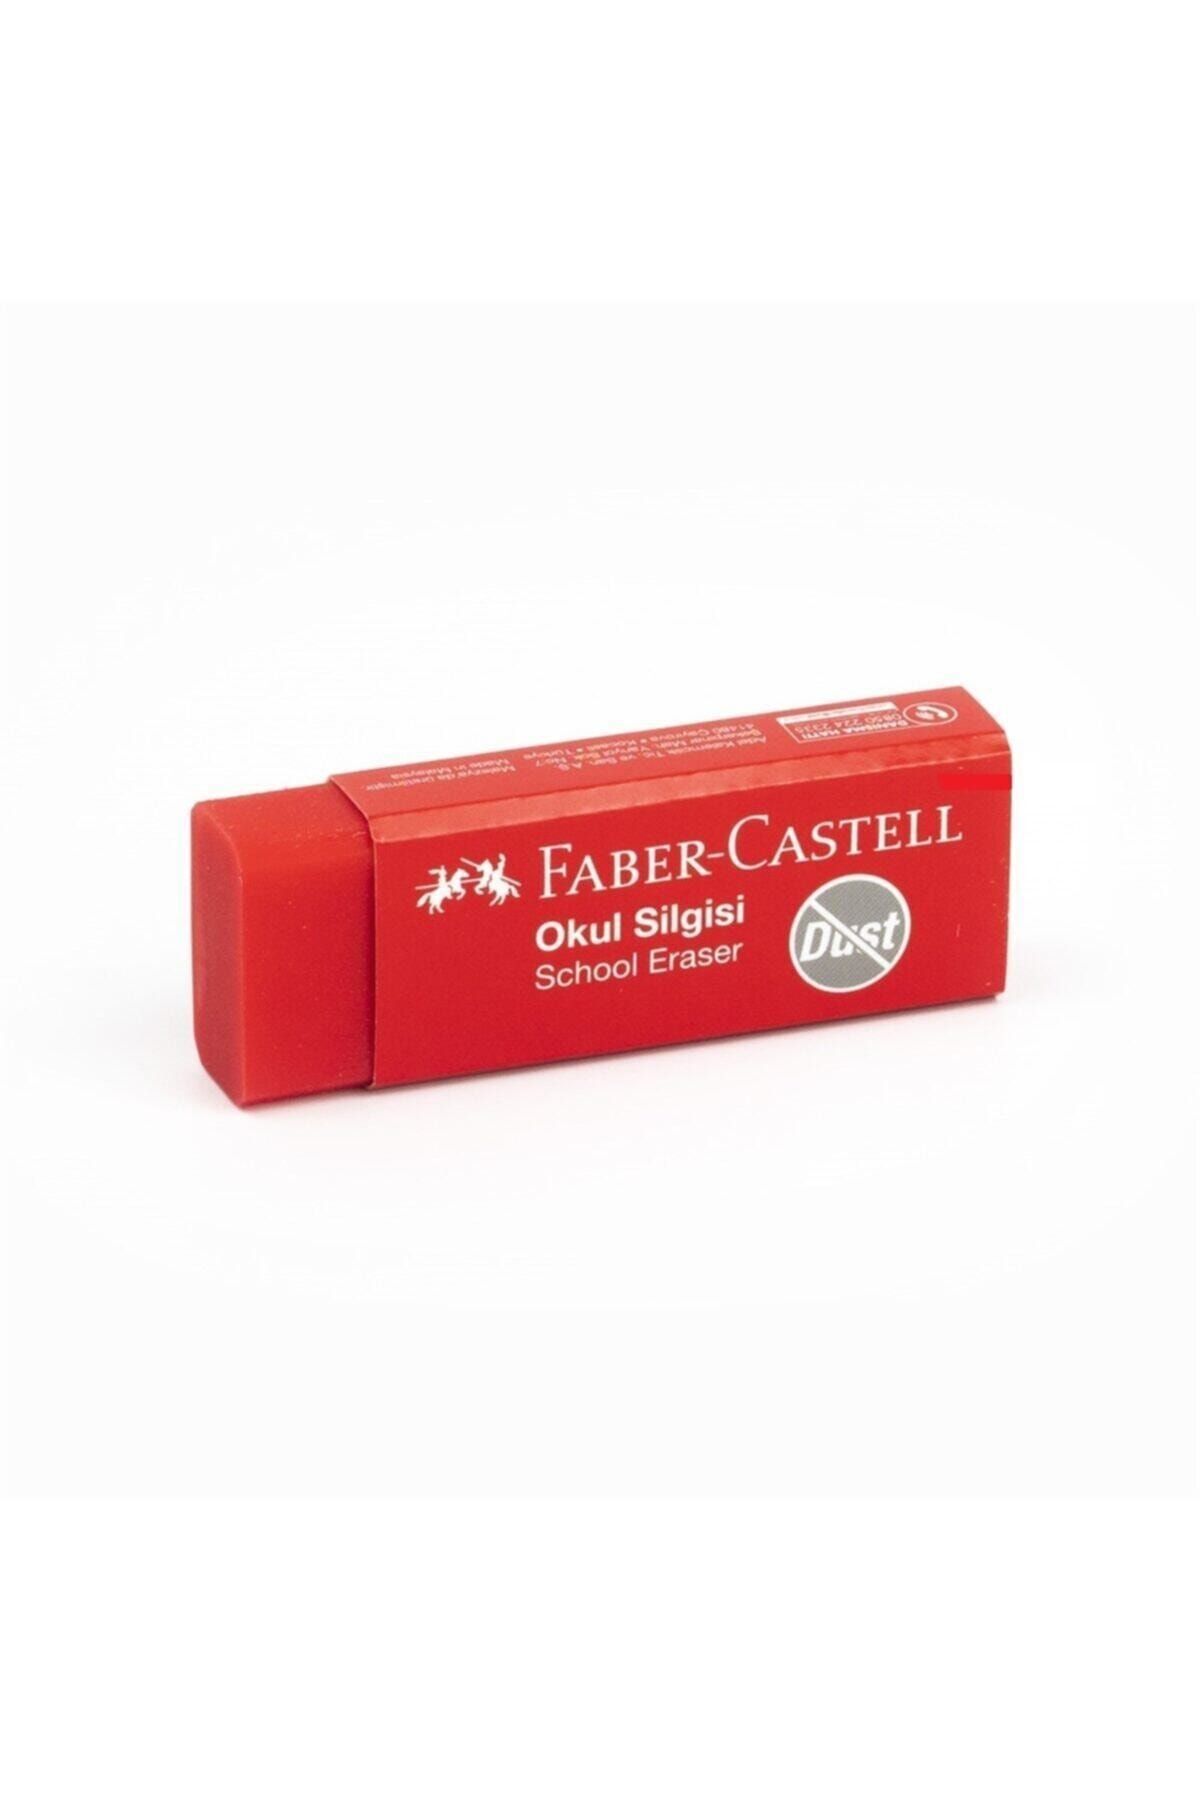 Faber Castell Kırmızı Renk Okul Silgisi Büyük 1 Adet